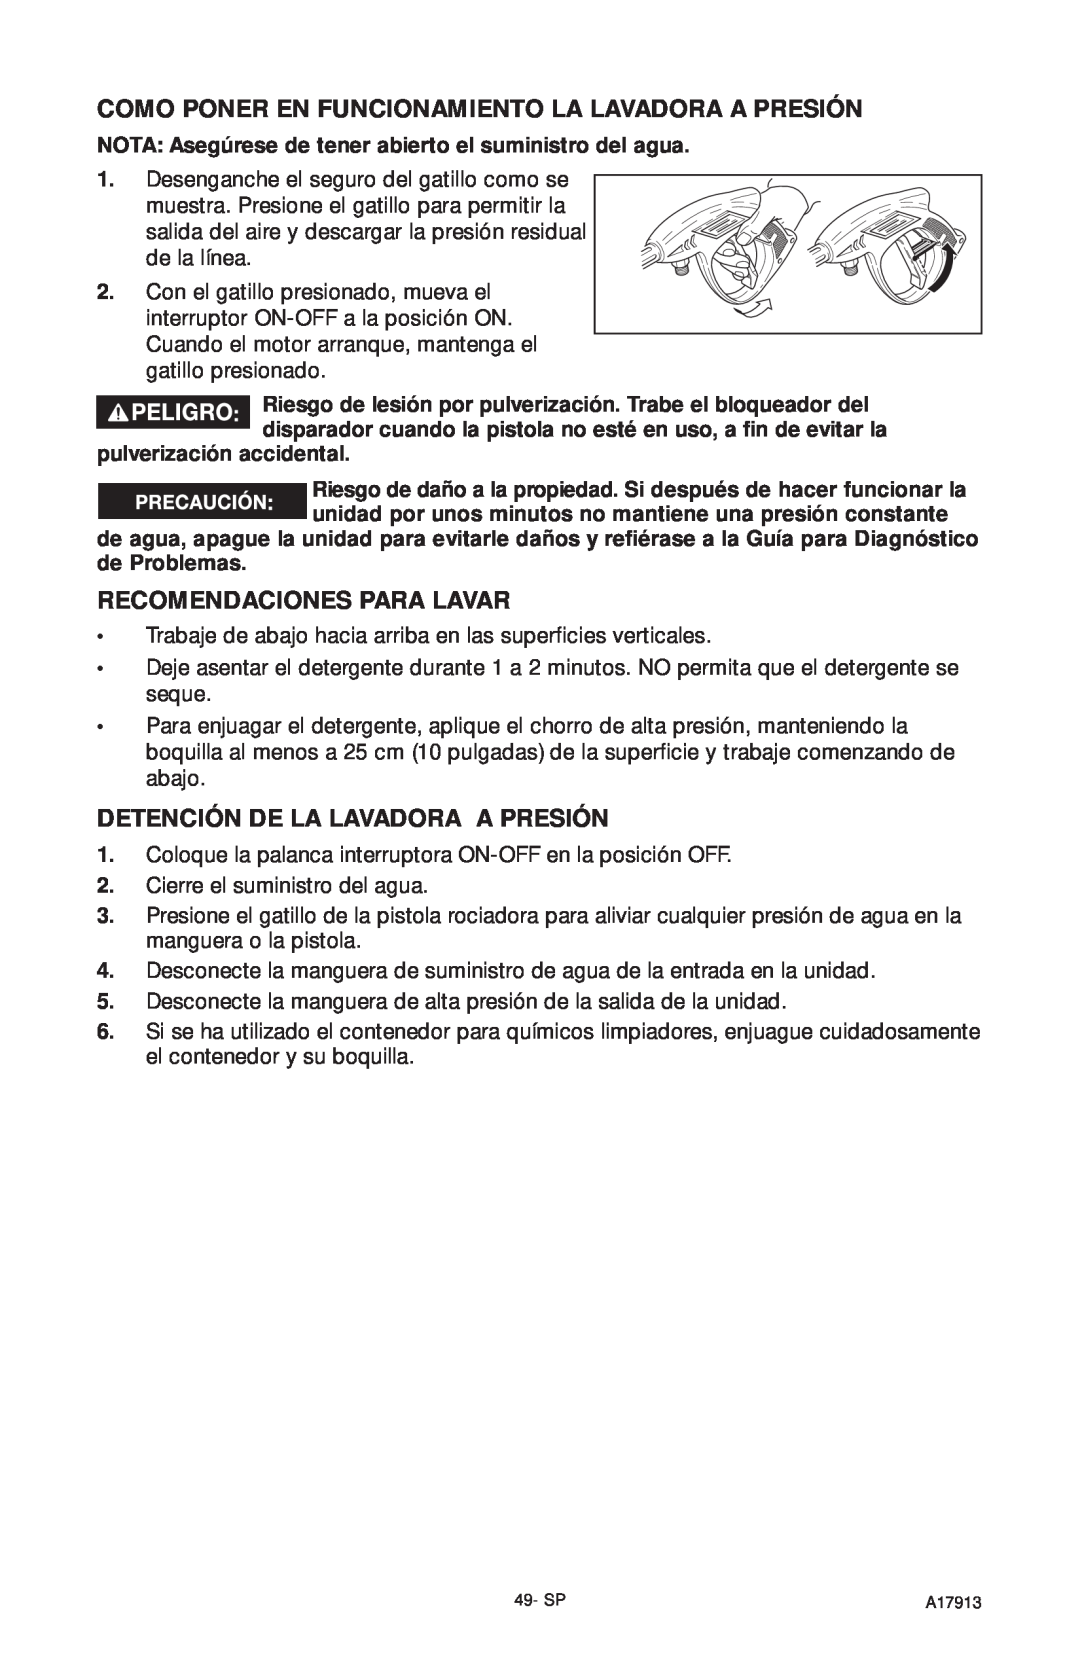 DeVillbiss Air Power Company A17913, VR1600E Recomendaciones Para Lavar, Detención De La Lavadora A Presión 